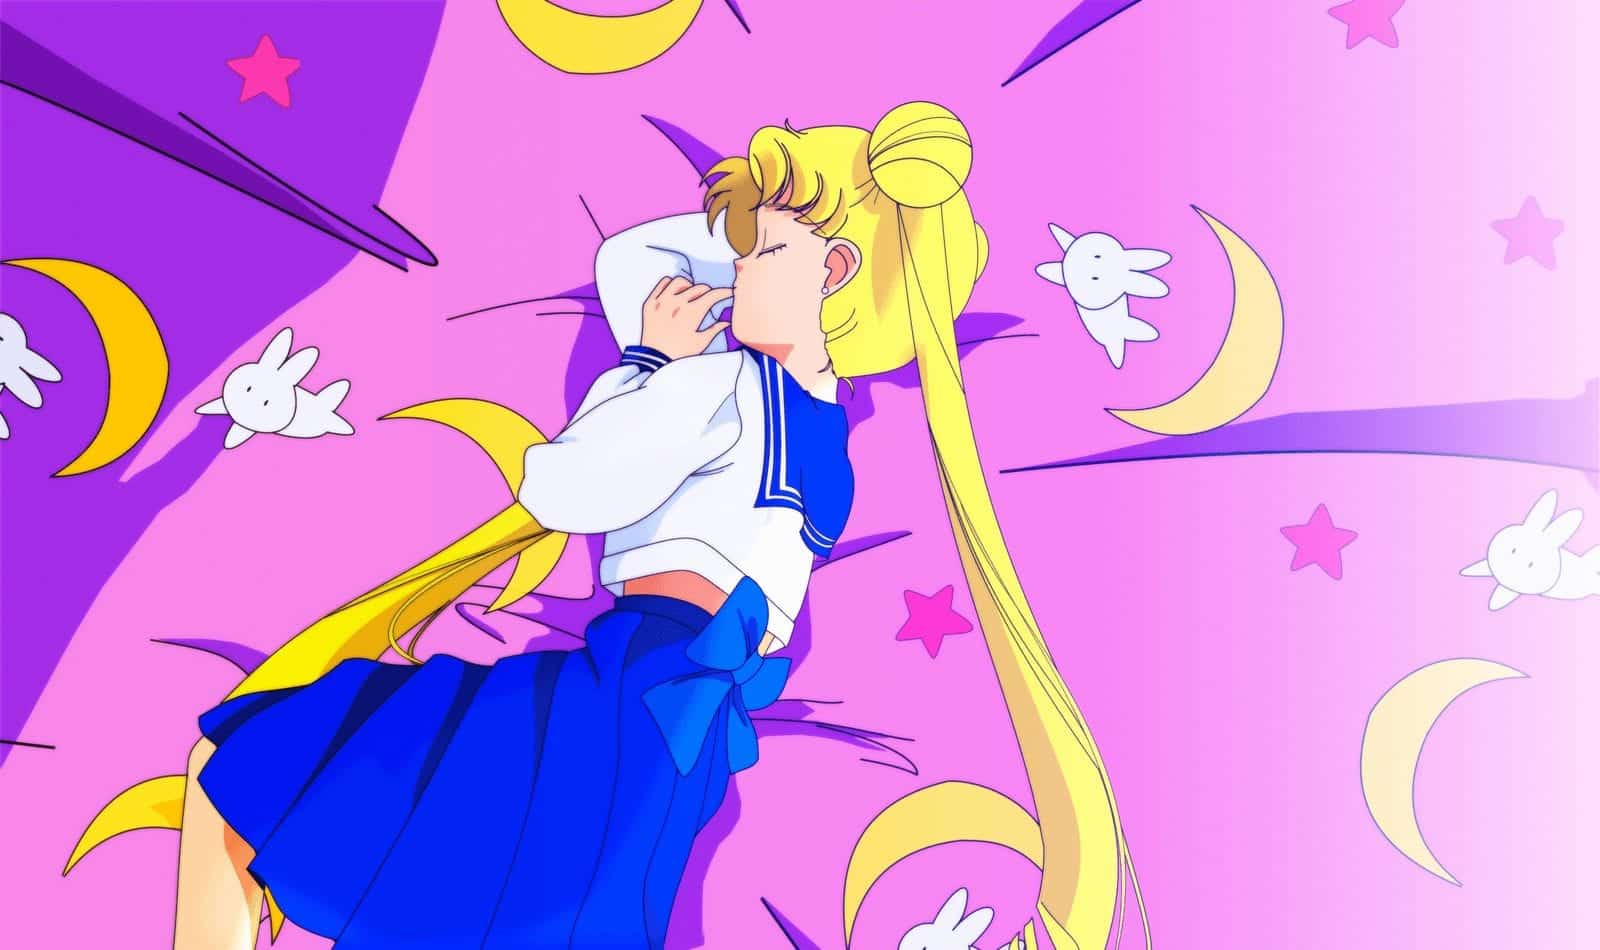 Sailor Moon - o anime com garotas heroínas que quebrou paradigmas